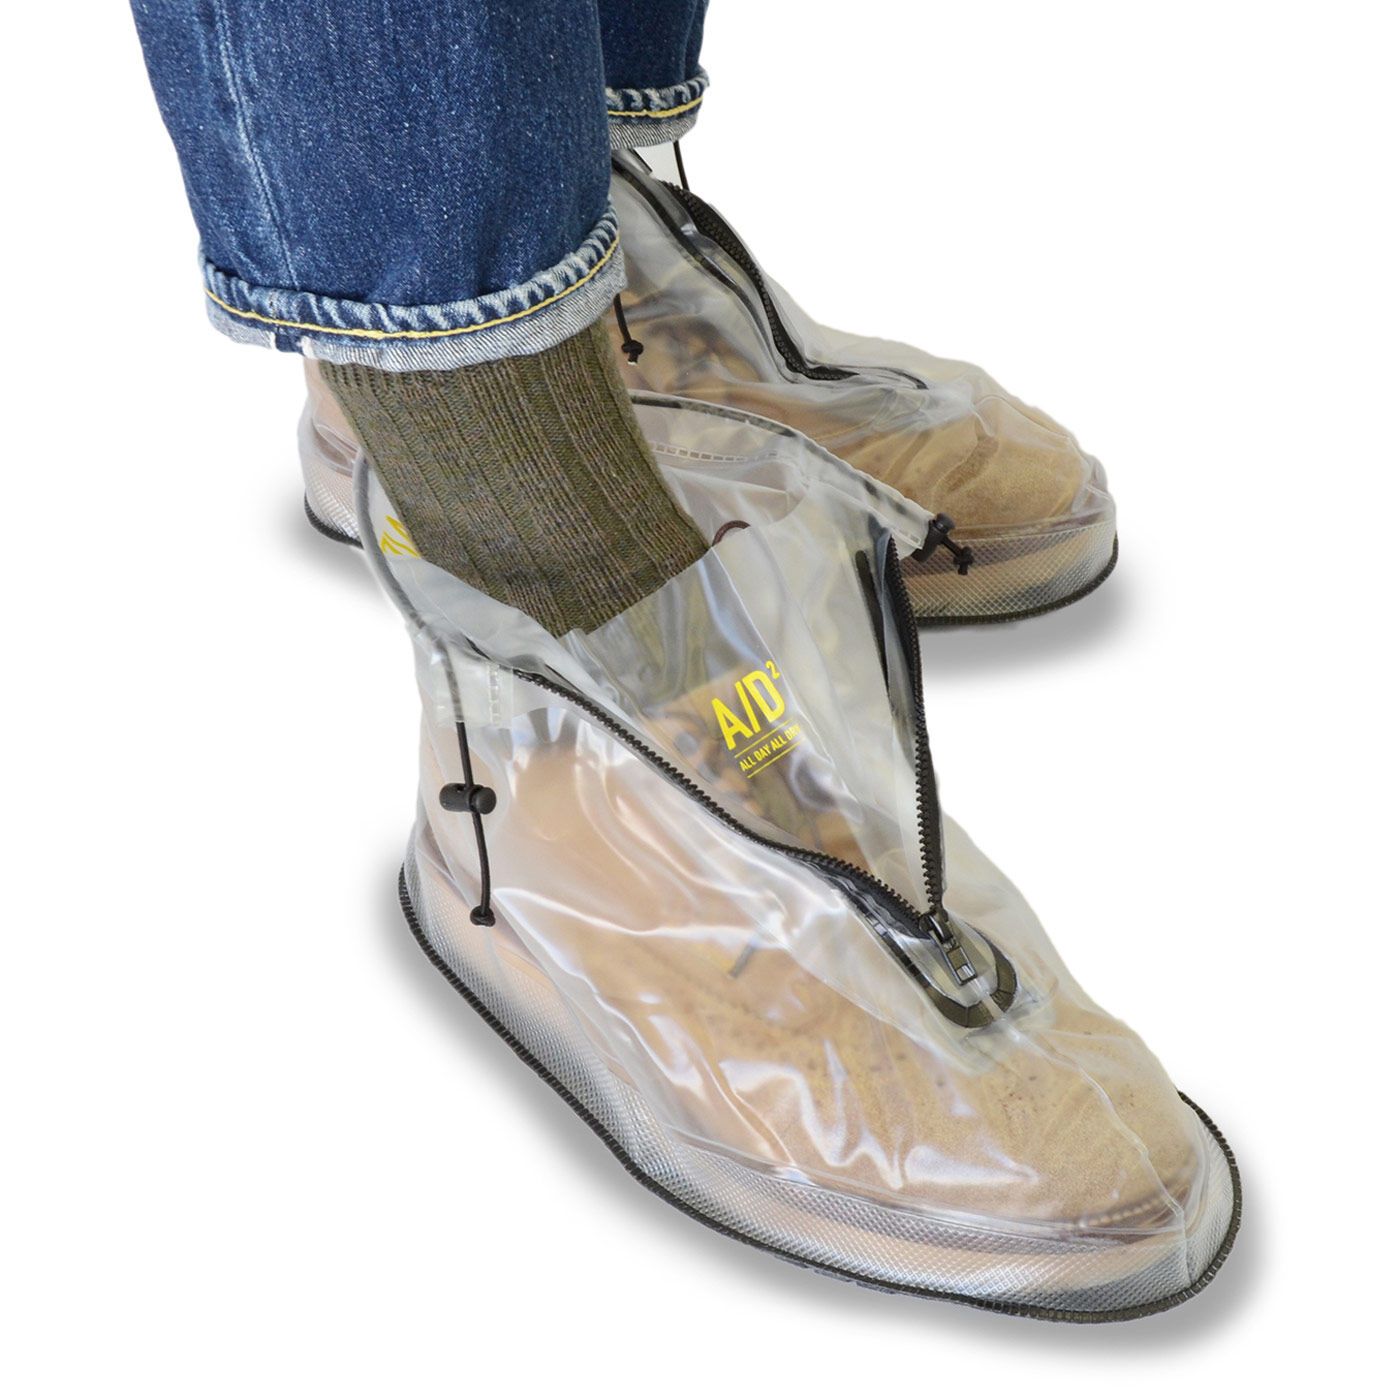 Real Stock|靴を雨や泥から守る　たたんで持ち歩けるシューズレインカバー〈黒〉|※画像は色違いの透明のLサイズ〈透明〉。